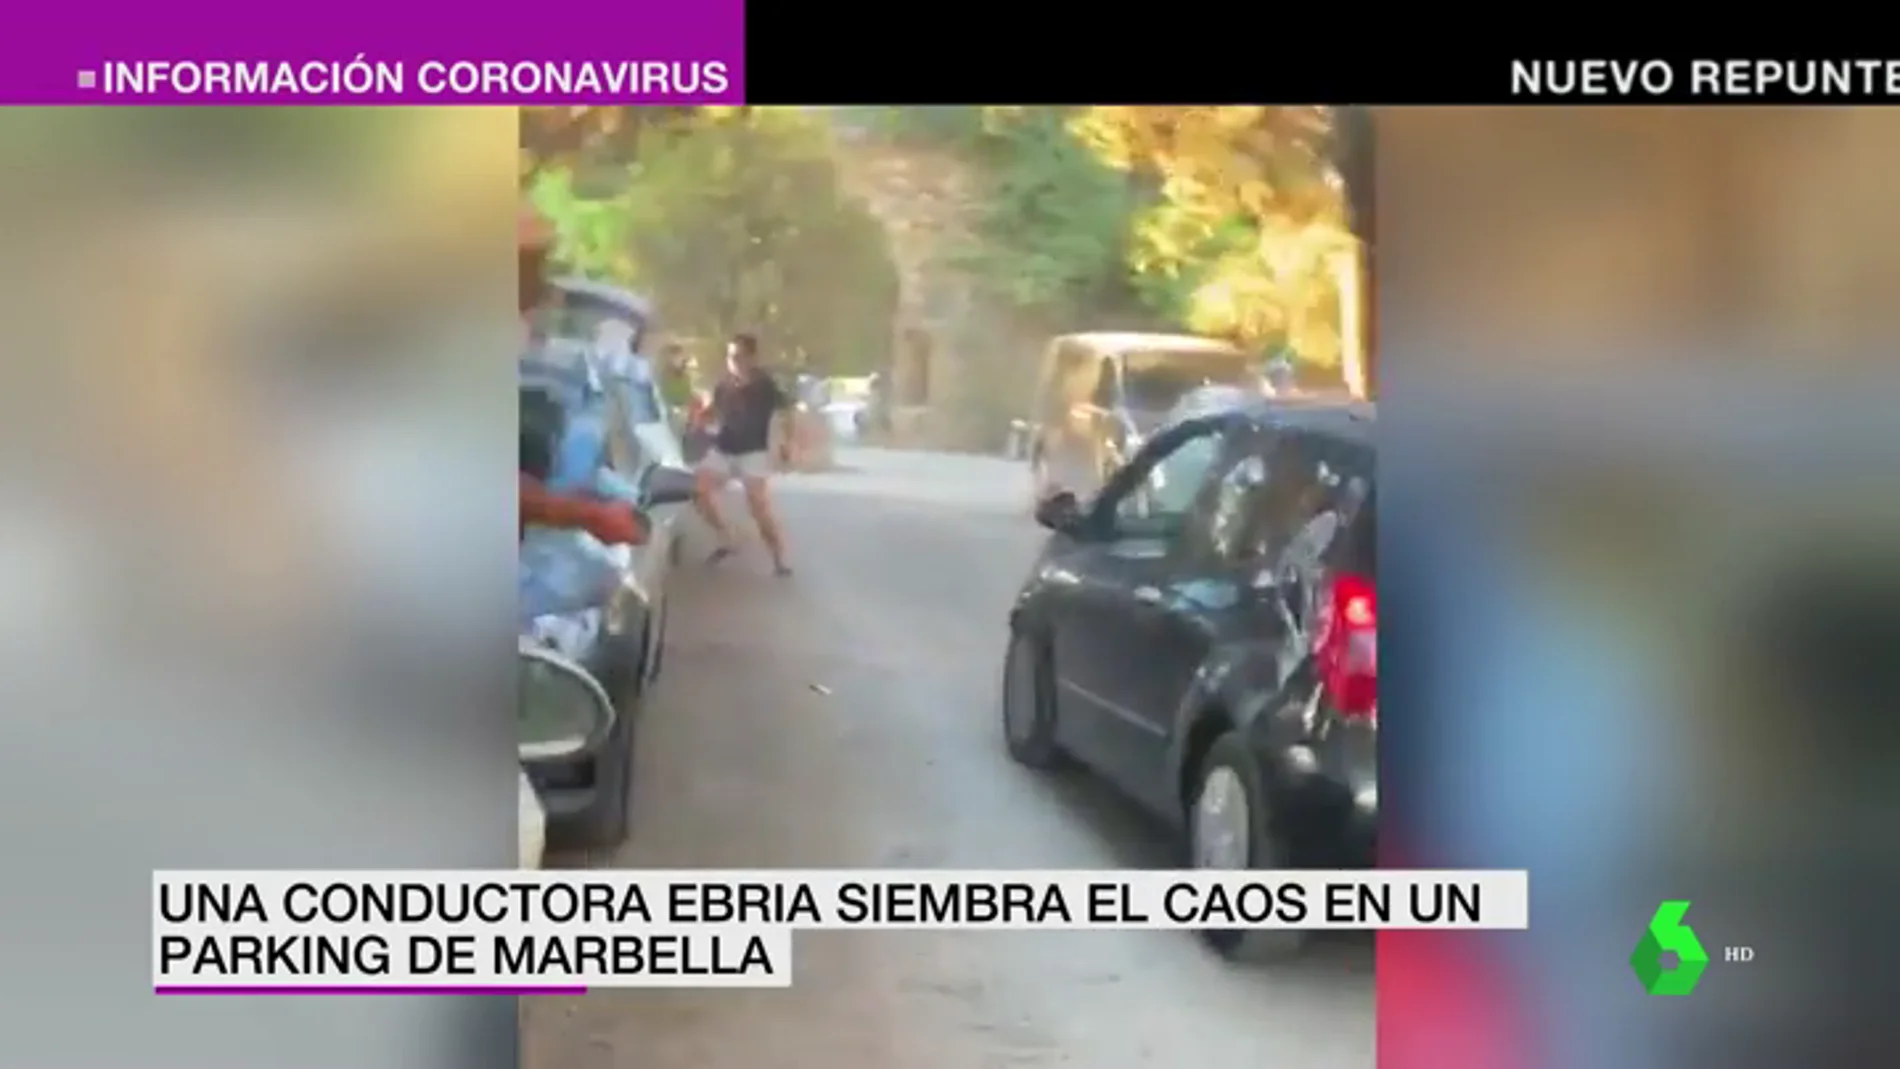 El momento en el que una conductora ebria siembra el caos en un aparcamiento de Marbella